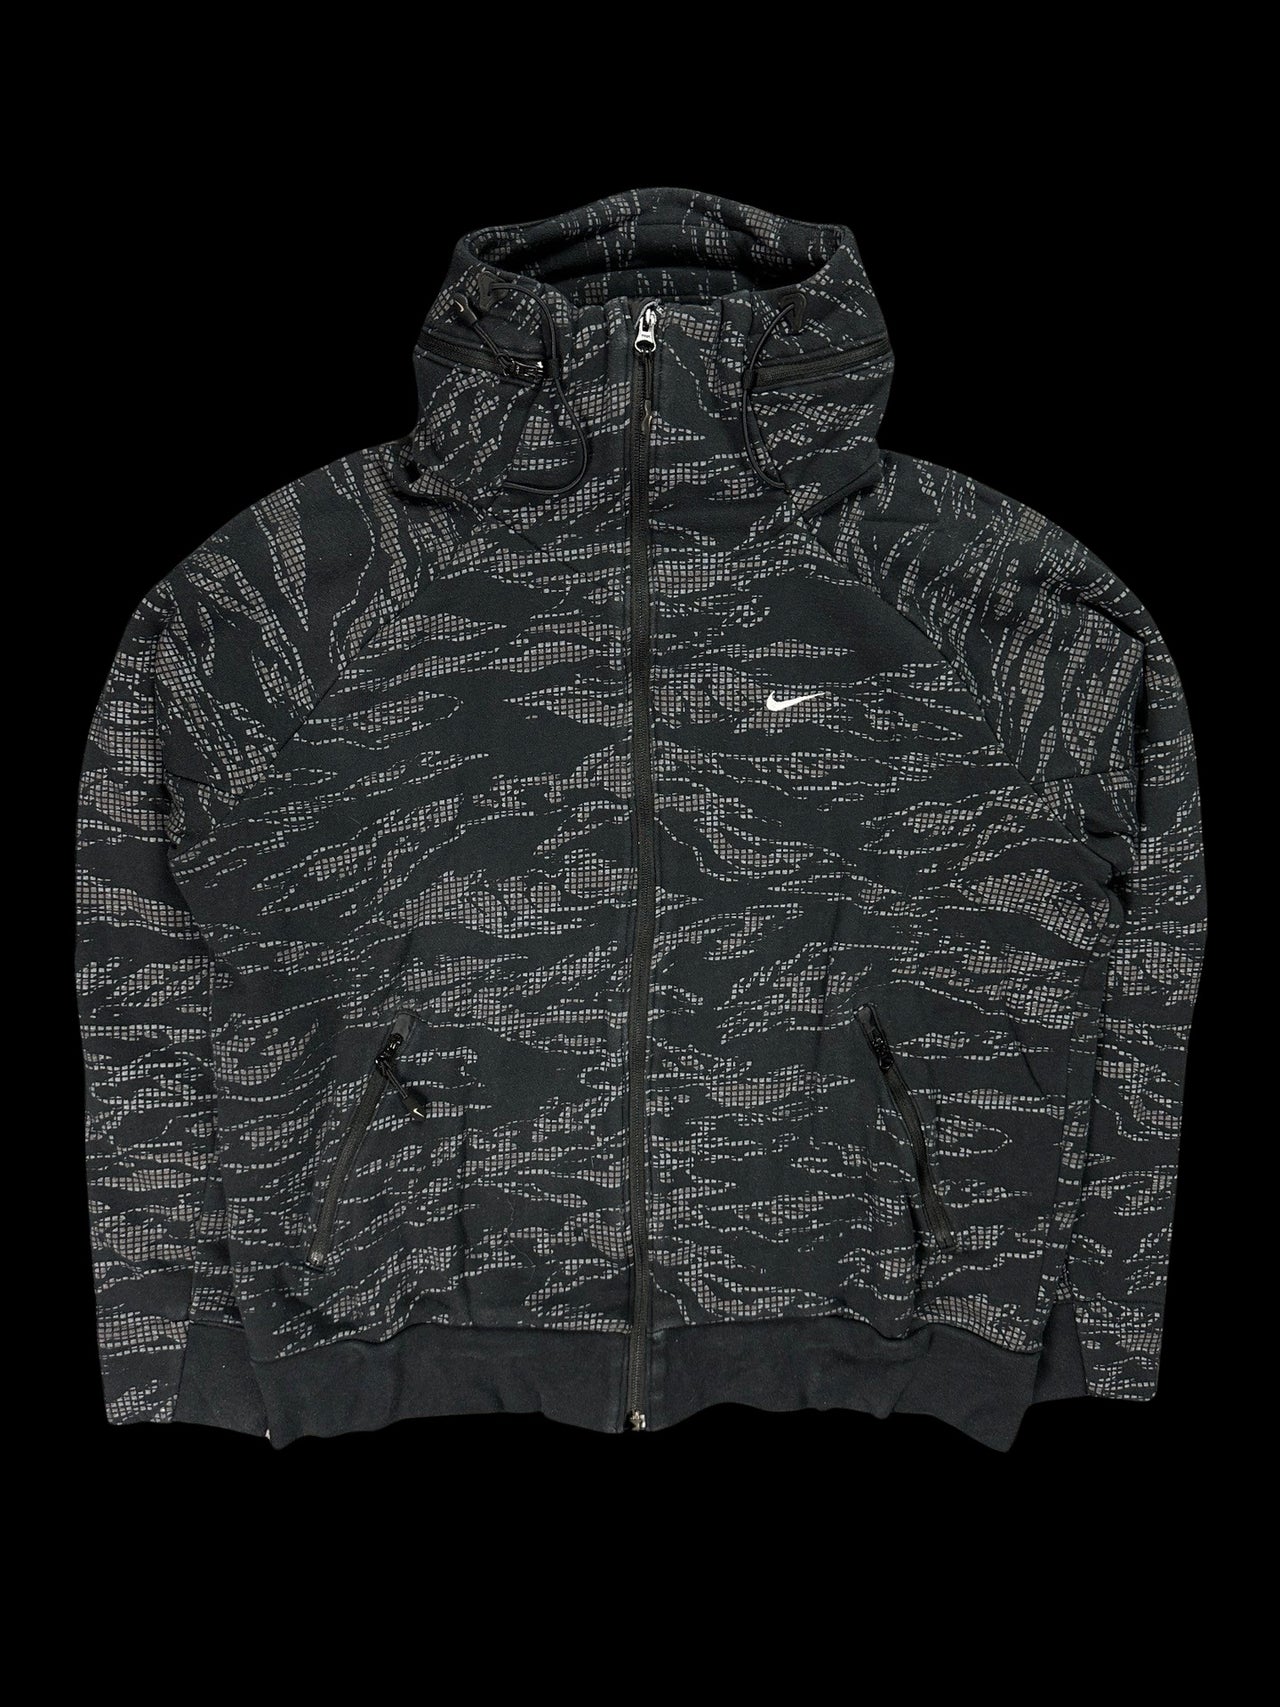 Nike Camouflage Jacket (M)